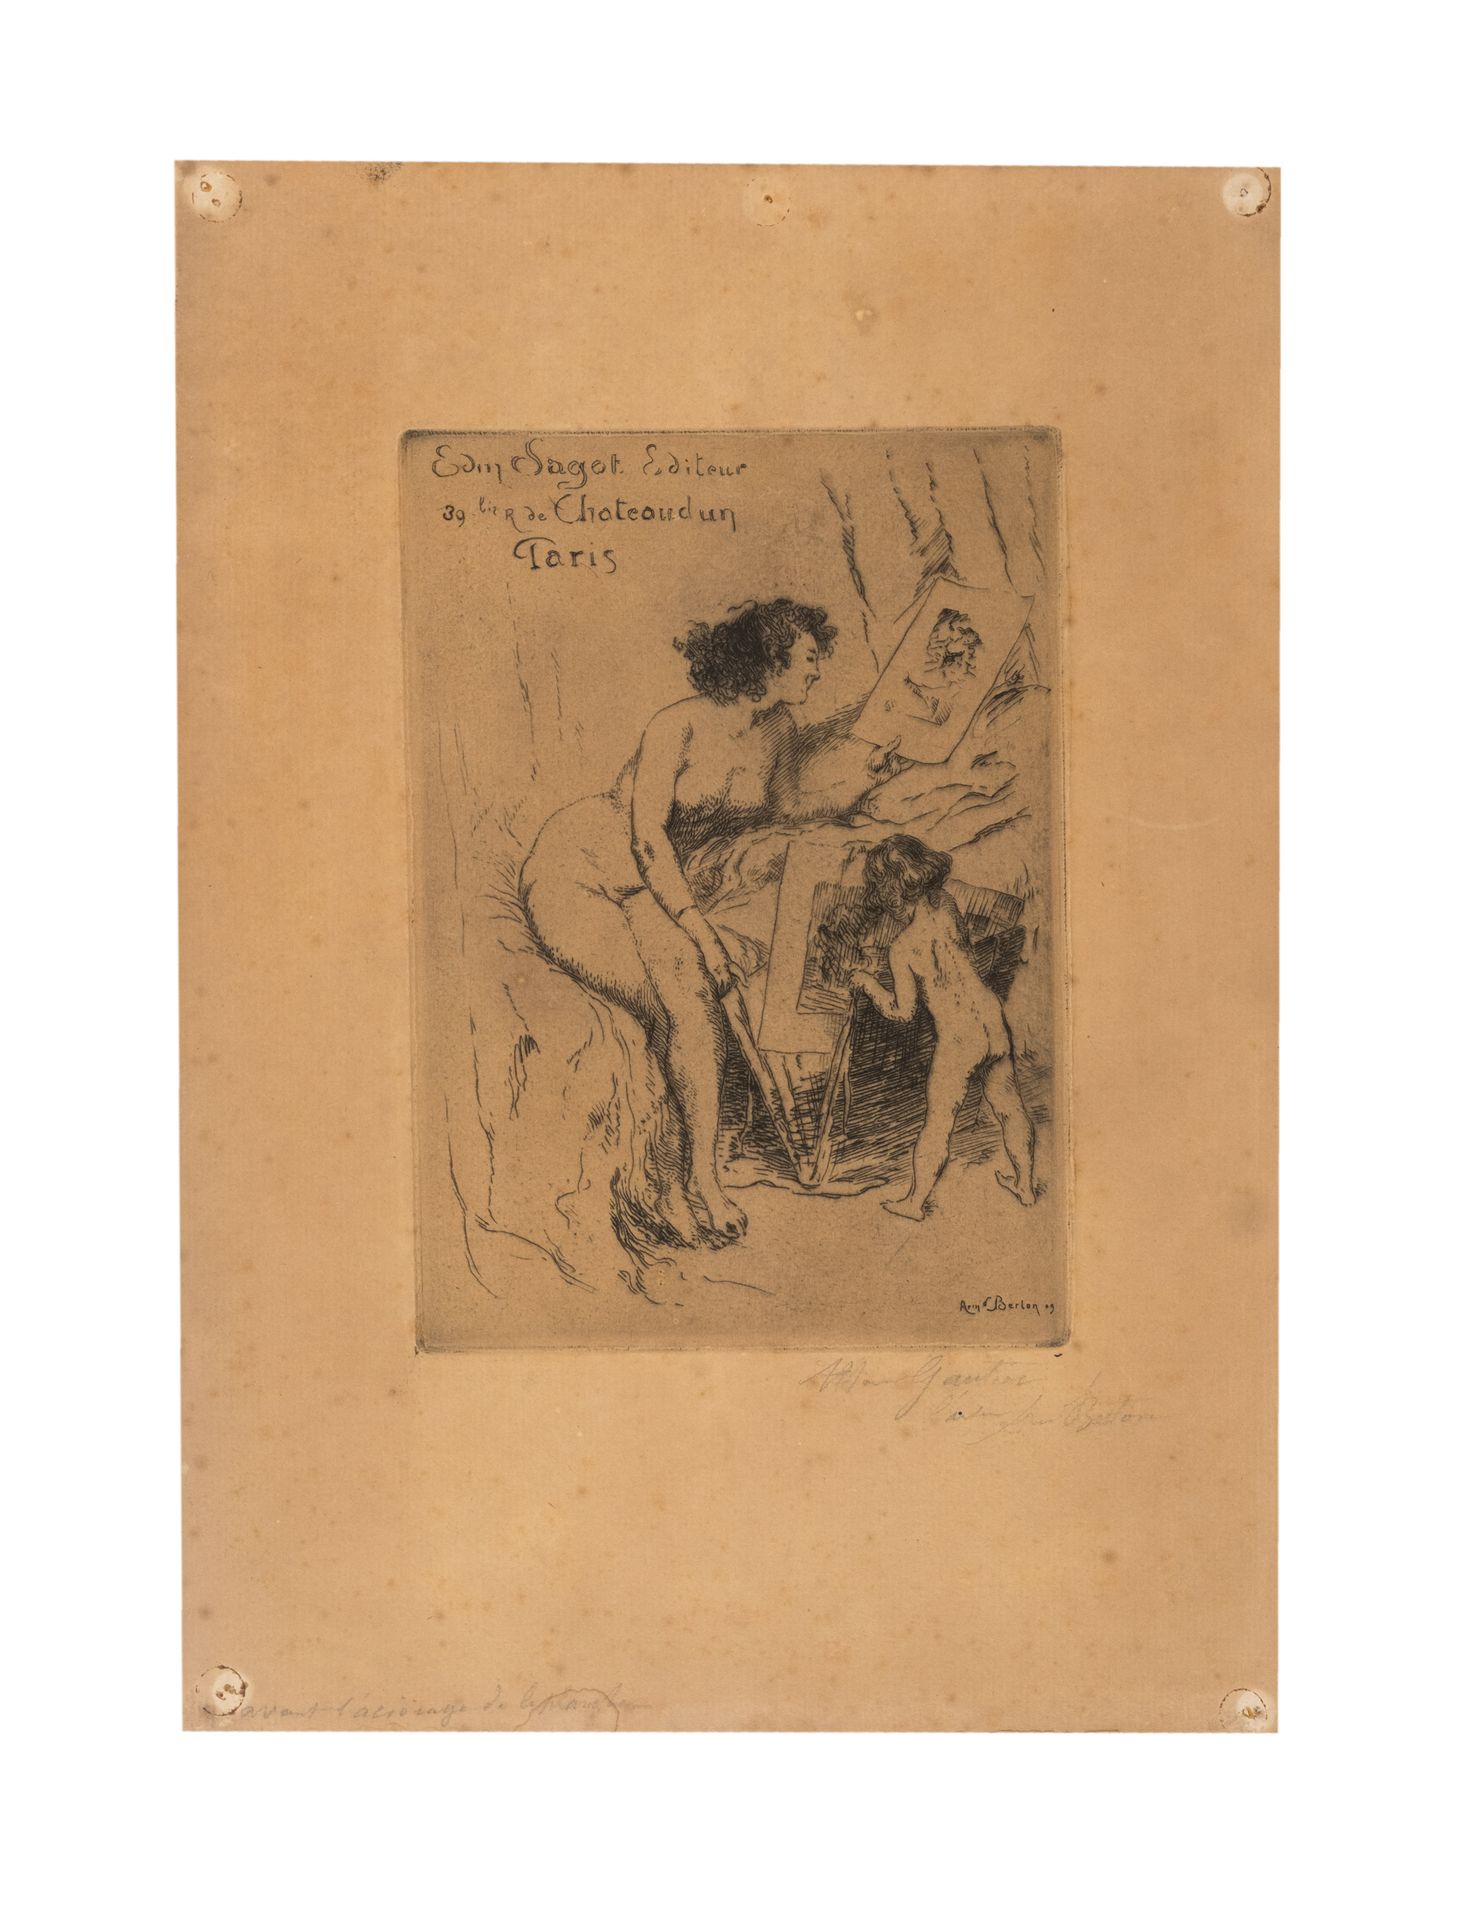 Null 阿尔芒-贝尔通 (1854-1917)

印刷商埃德蒙-萨戈特的广告。

纸上蚀刻，烧制证明，边缘四角有针孔。

纸张：30,5 x 22 cm - &hellip;